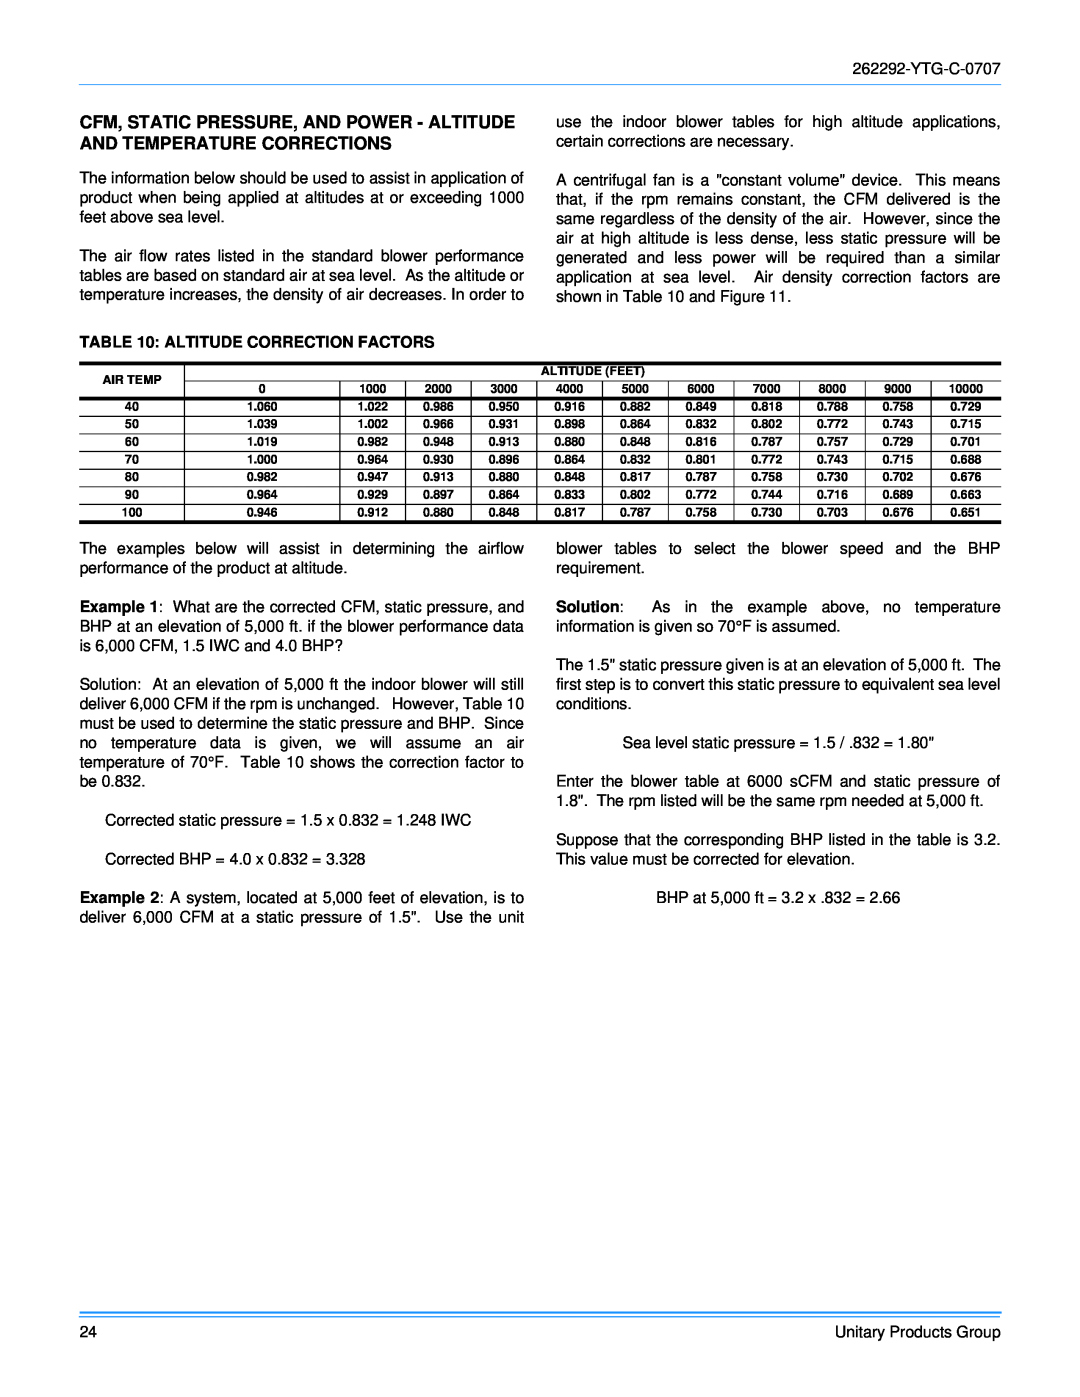 York WR 180 warranty Altitude Correction Factors 